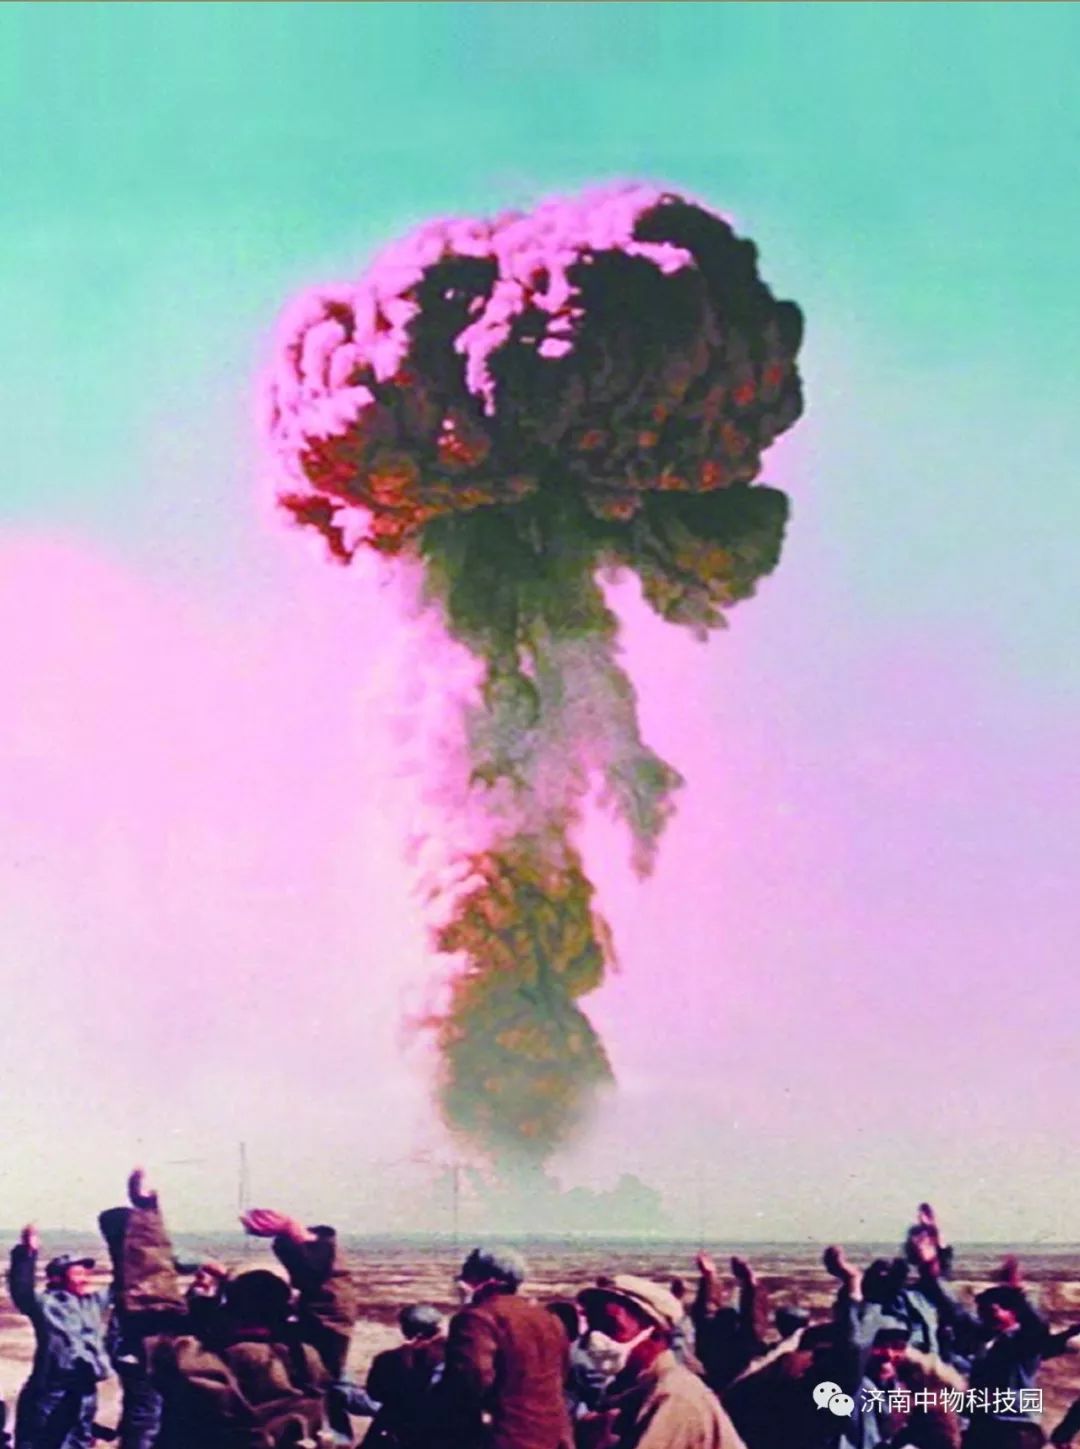 54年前的今天中国第一颗原子弹爆炸成功